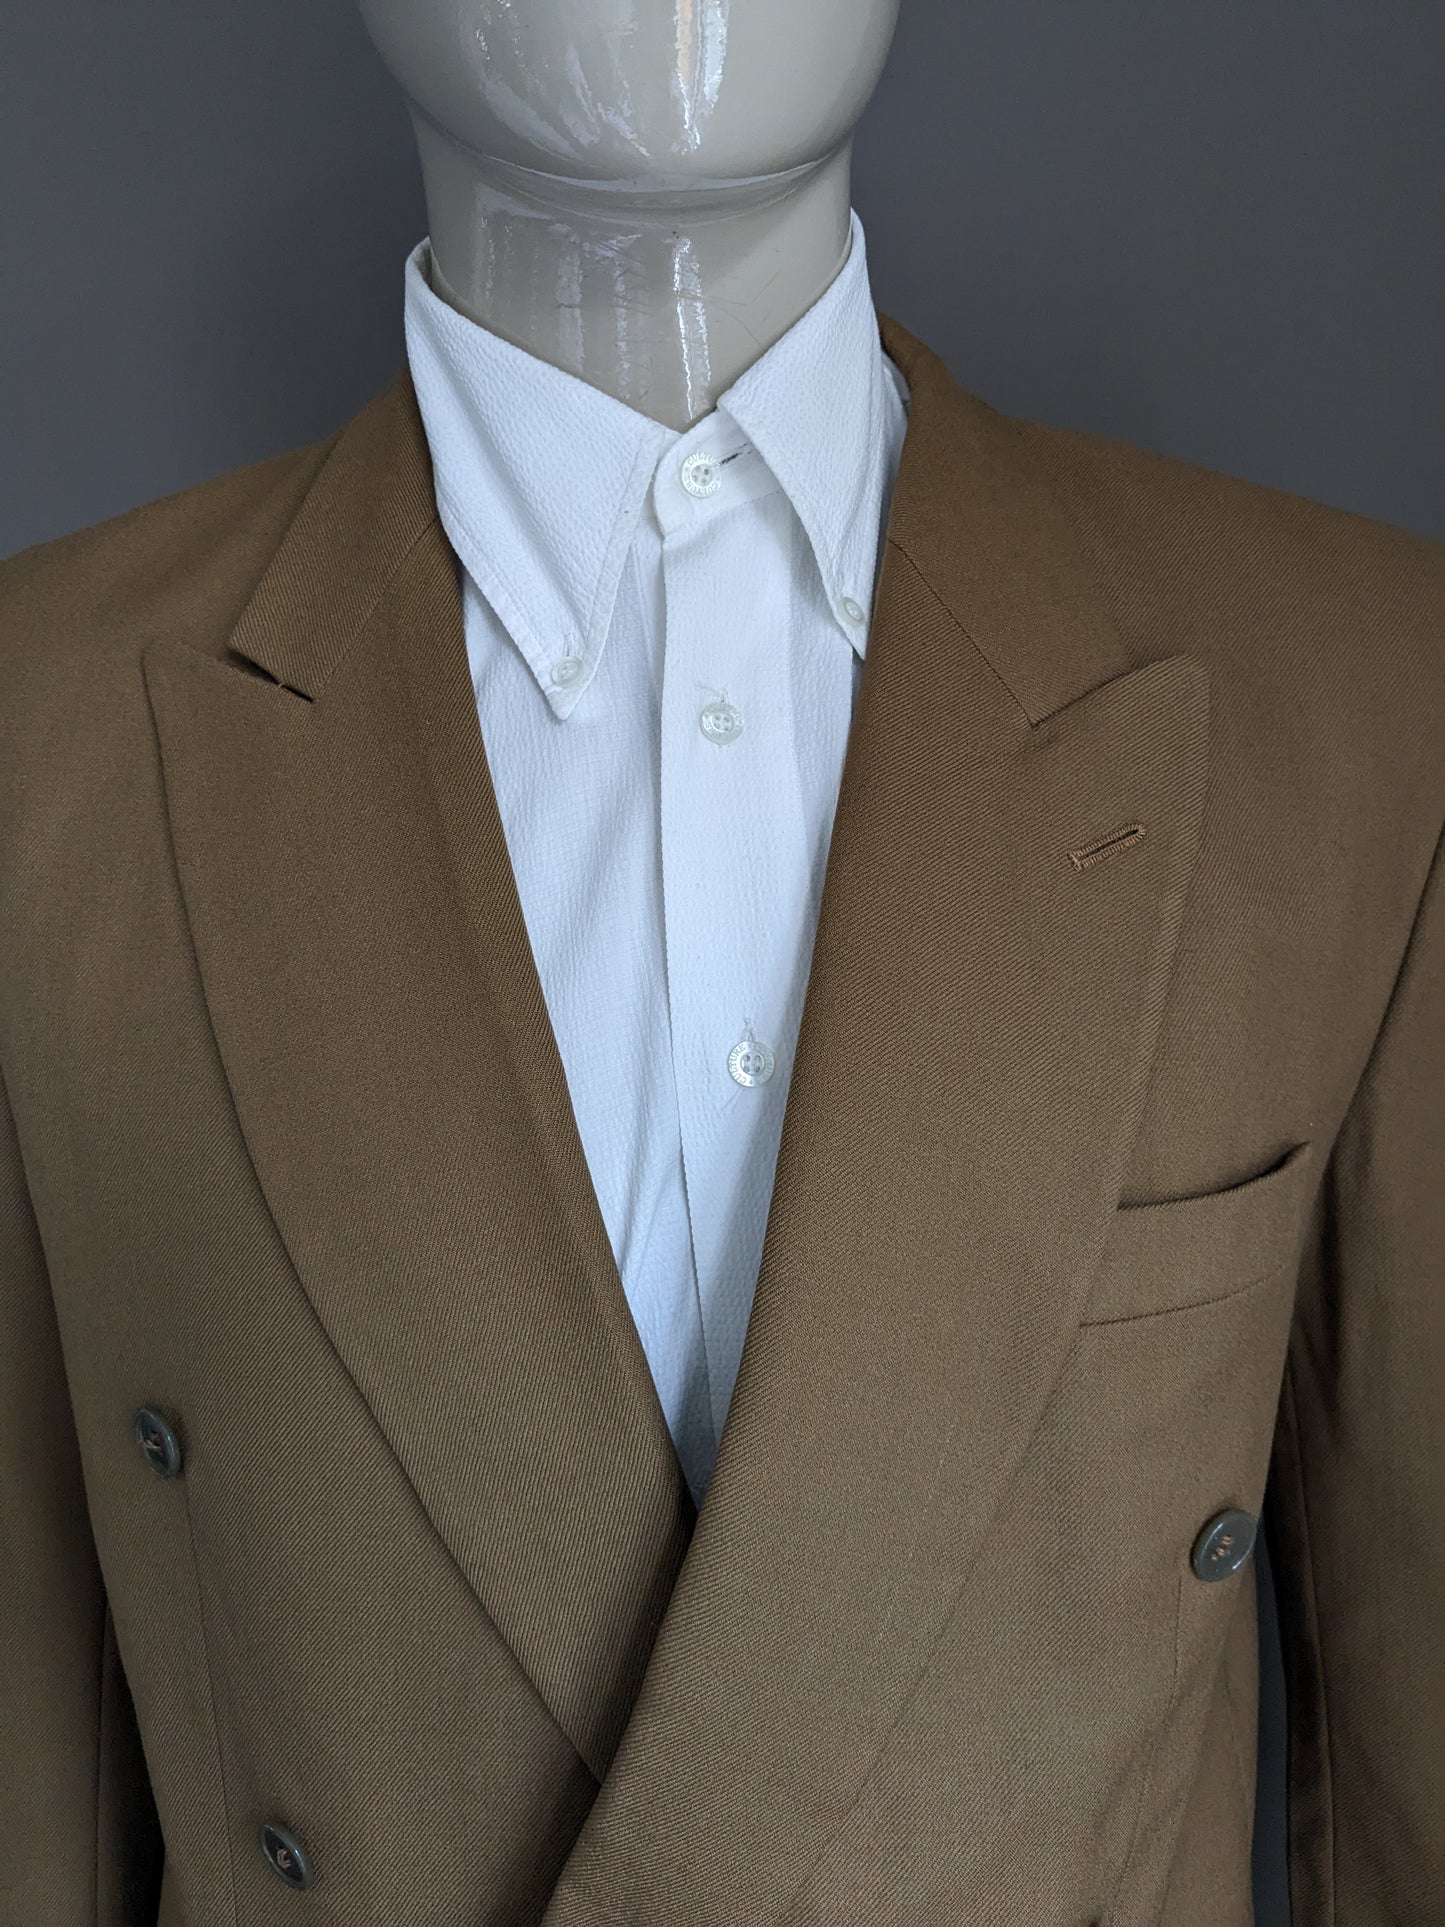 B Opción: Vintage Woolen Andrews & May Double Breaded Chaqueta. Color marrón claro. Tamaño 49 (m).